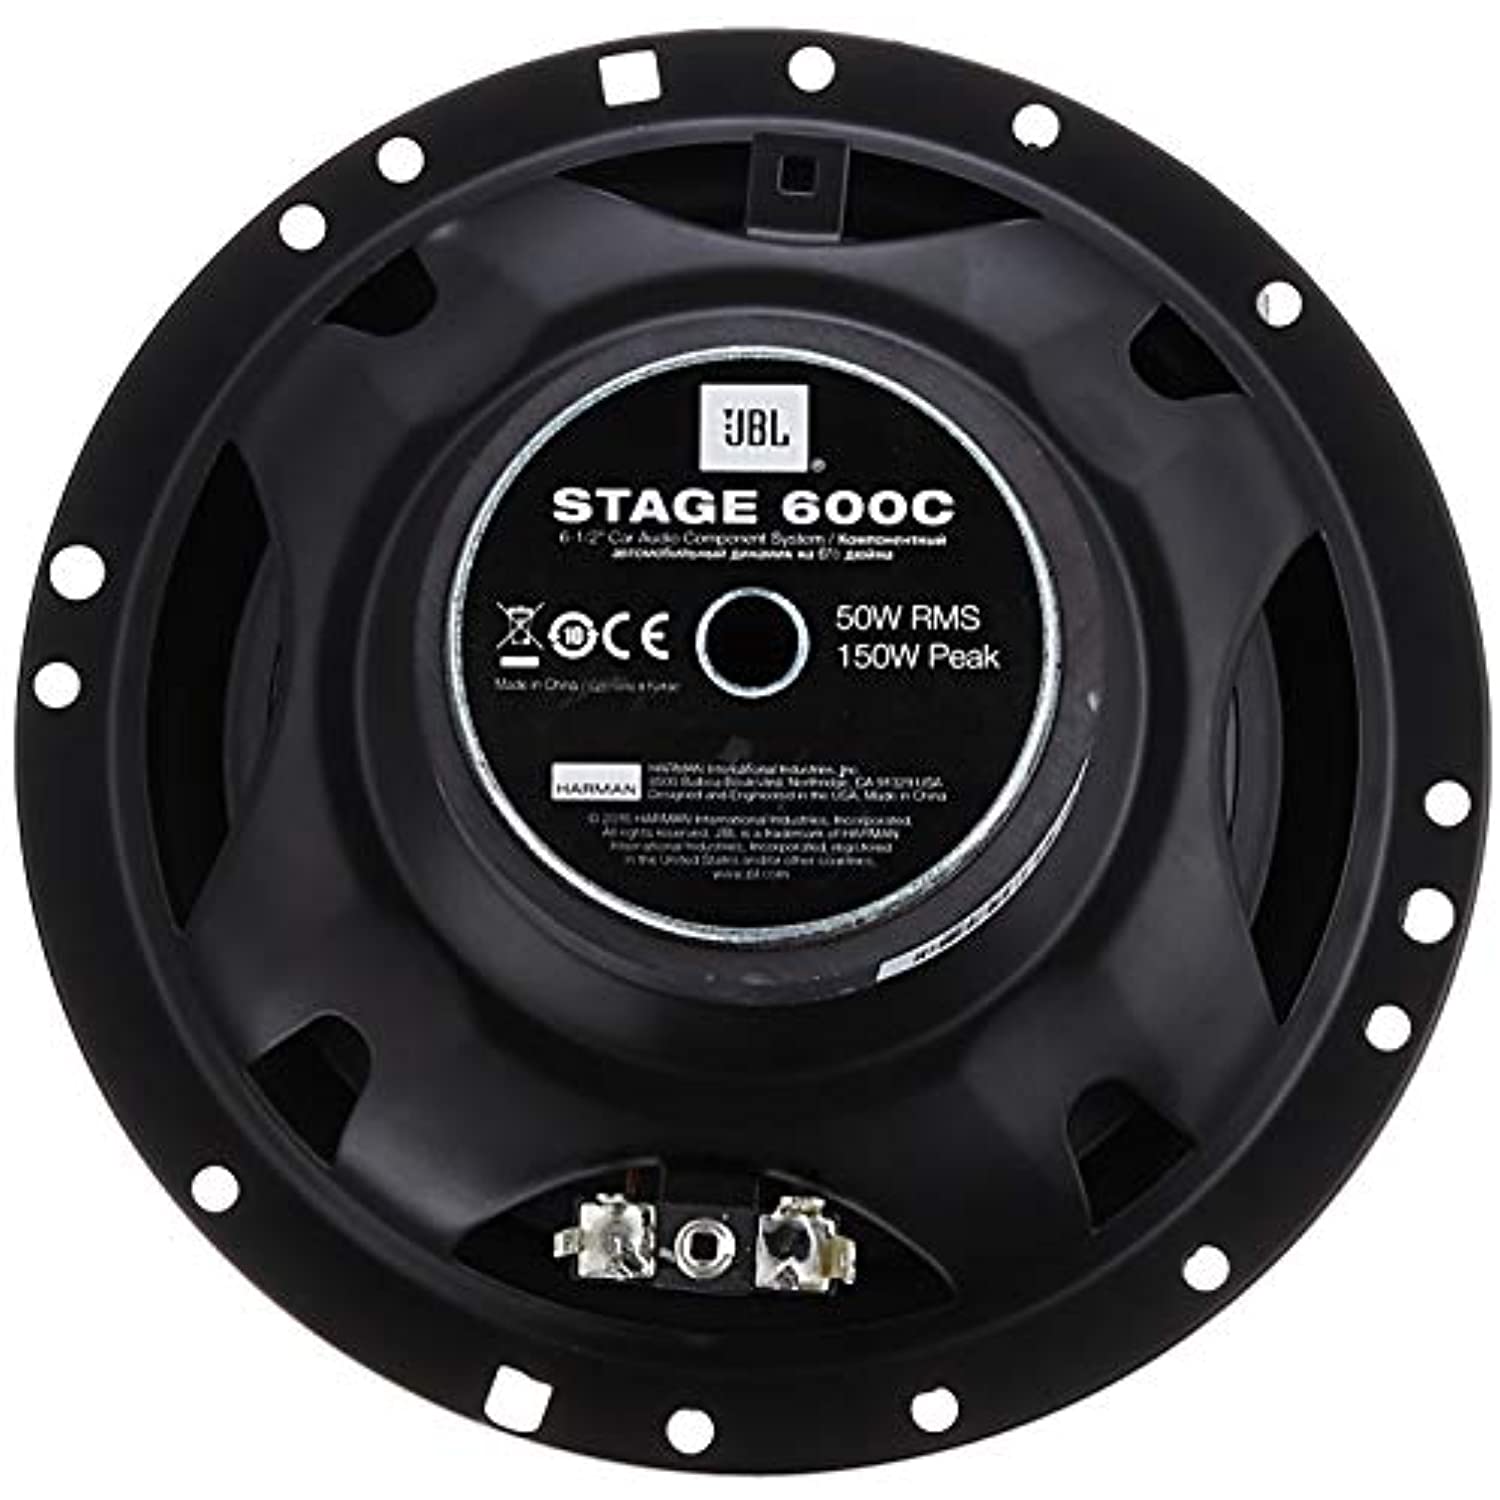 JBL Stage 600C 6-1/2" Component System, Black